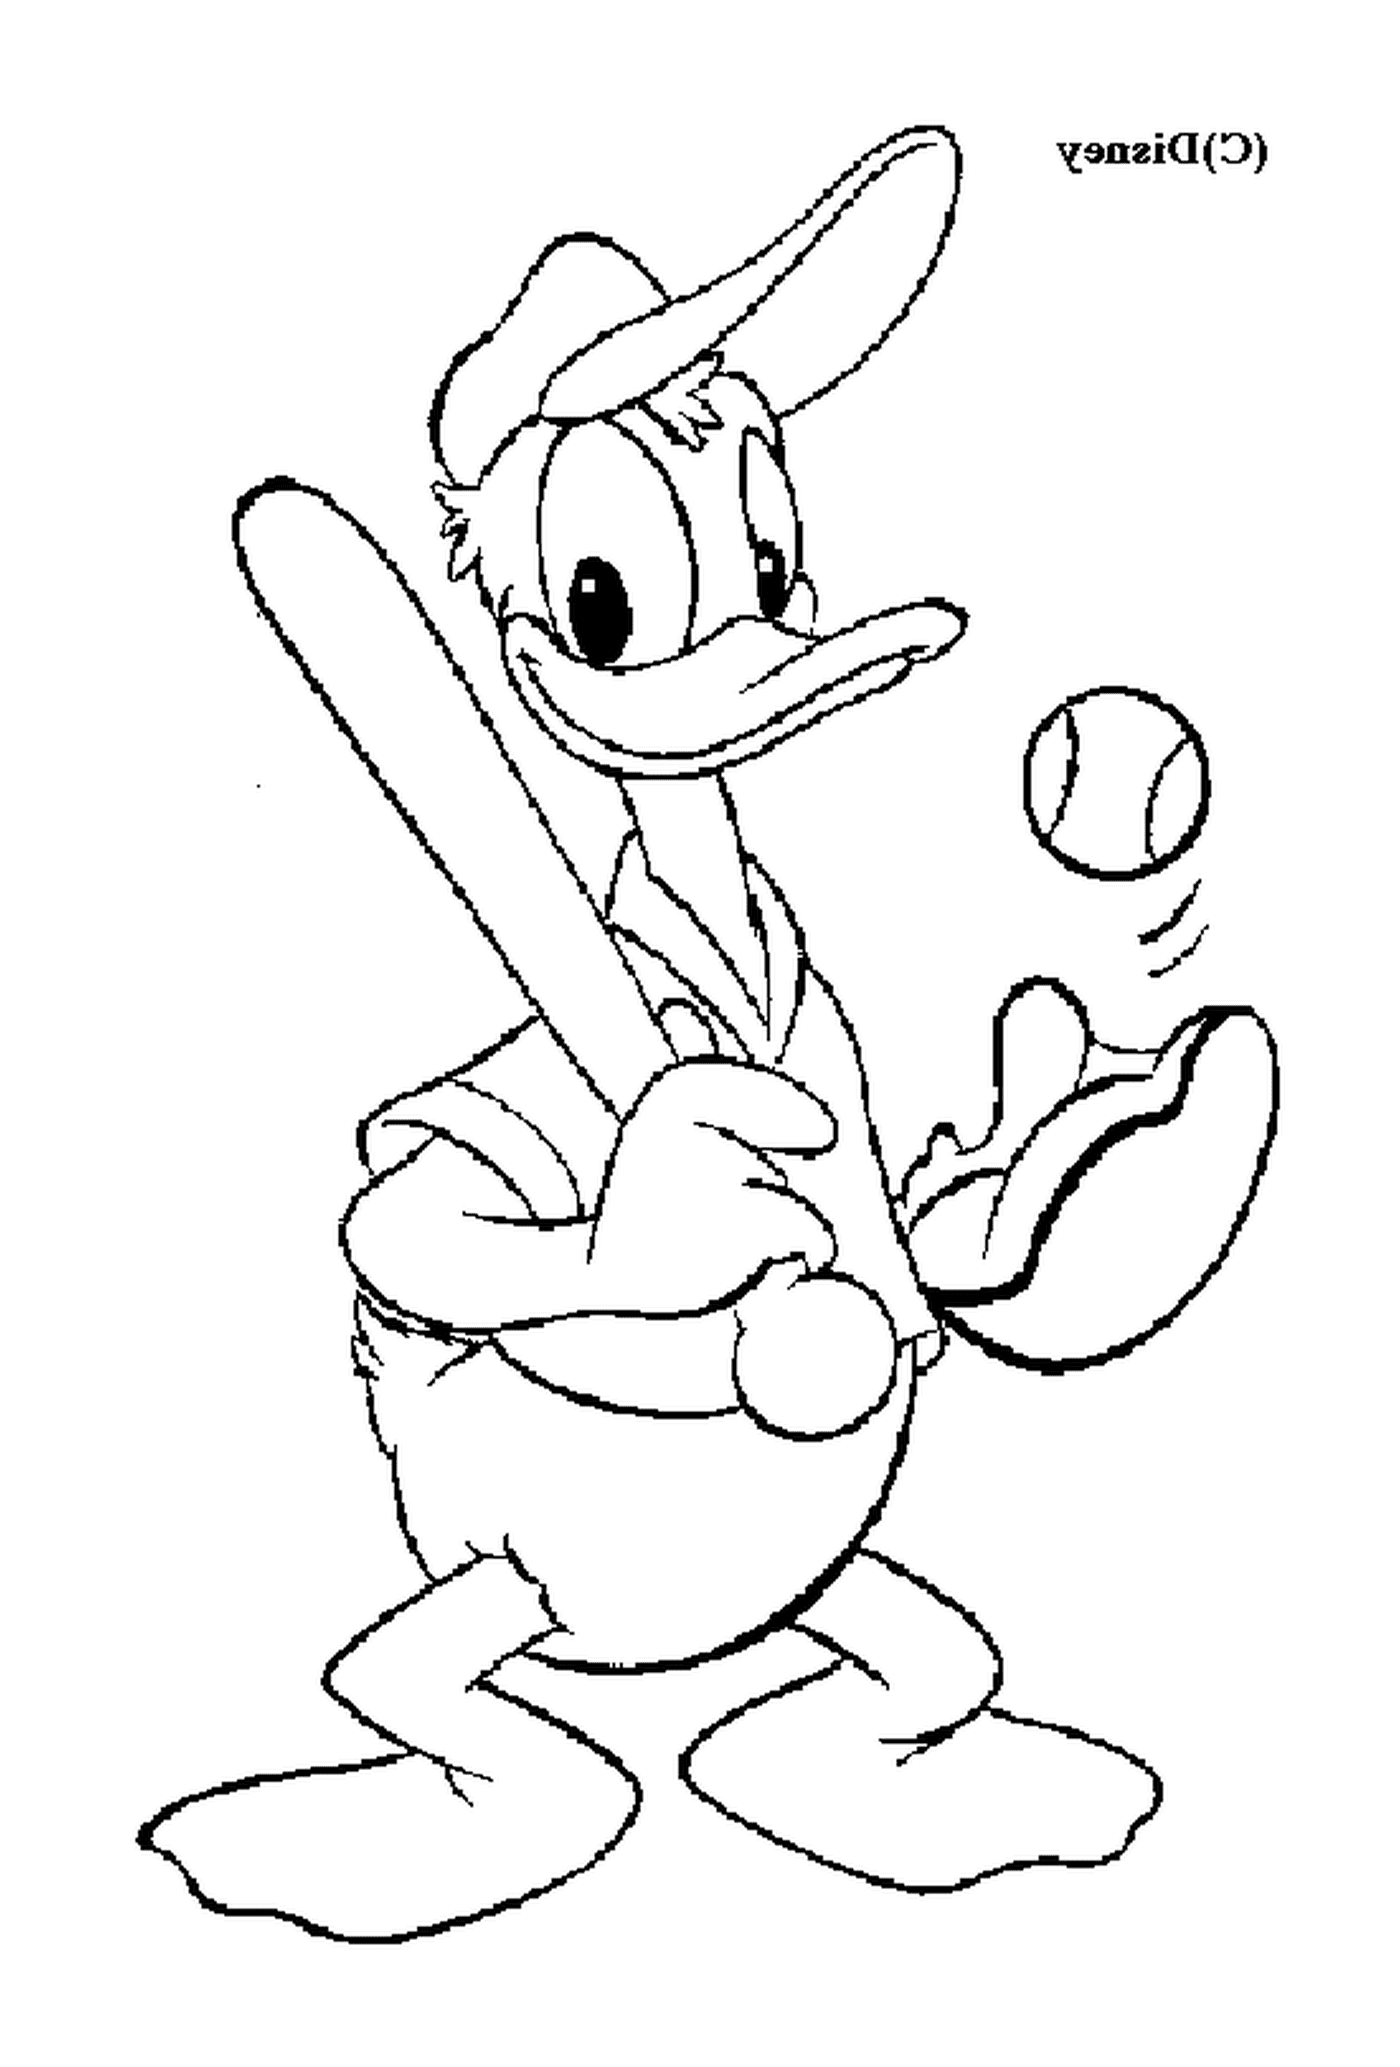  Donald plays baseball with ardour 